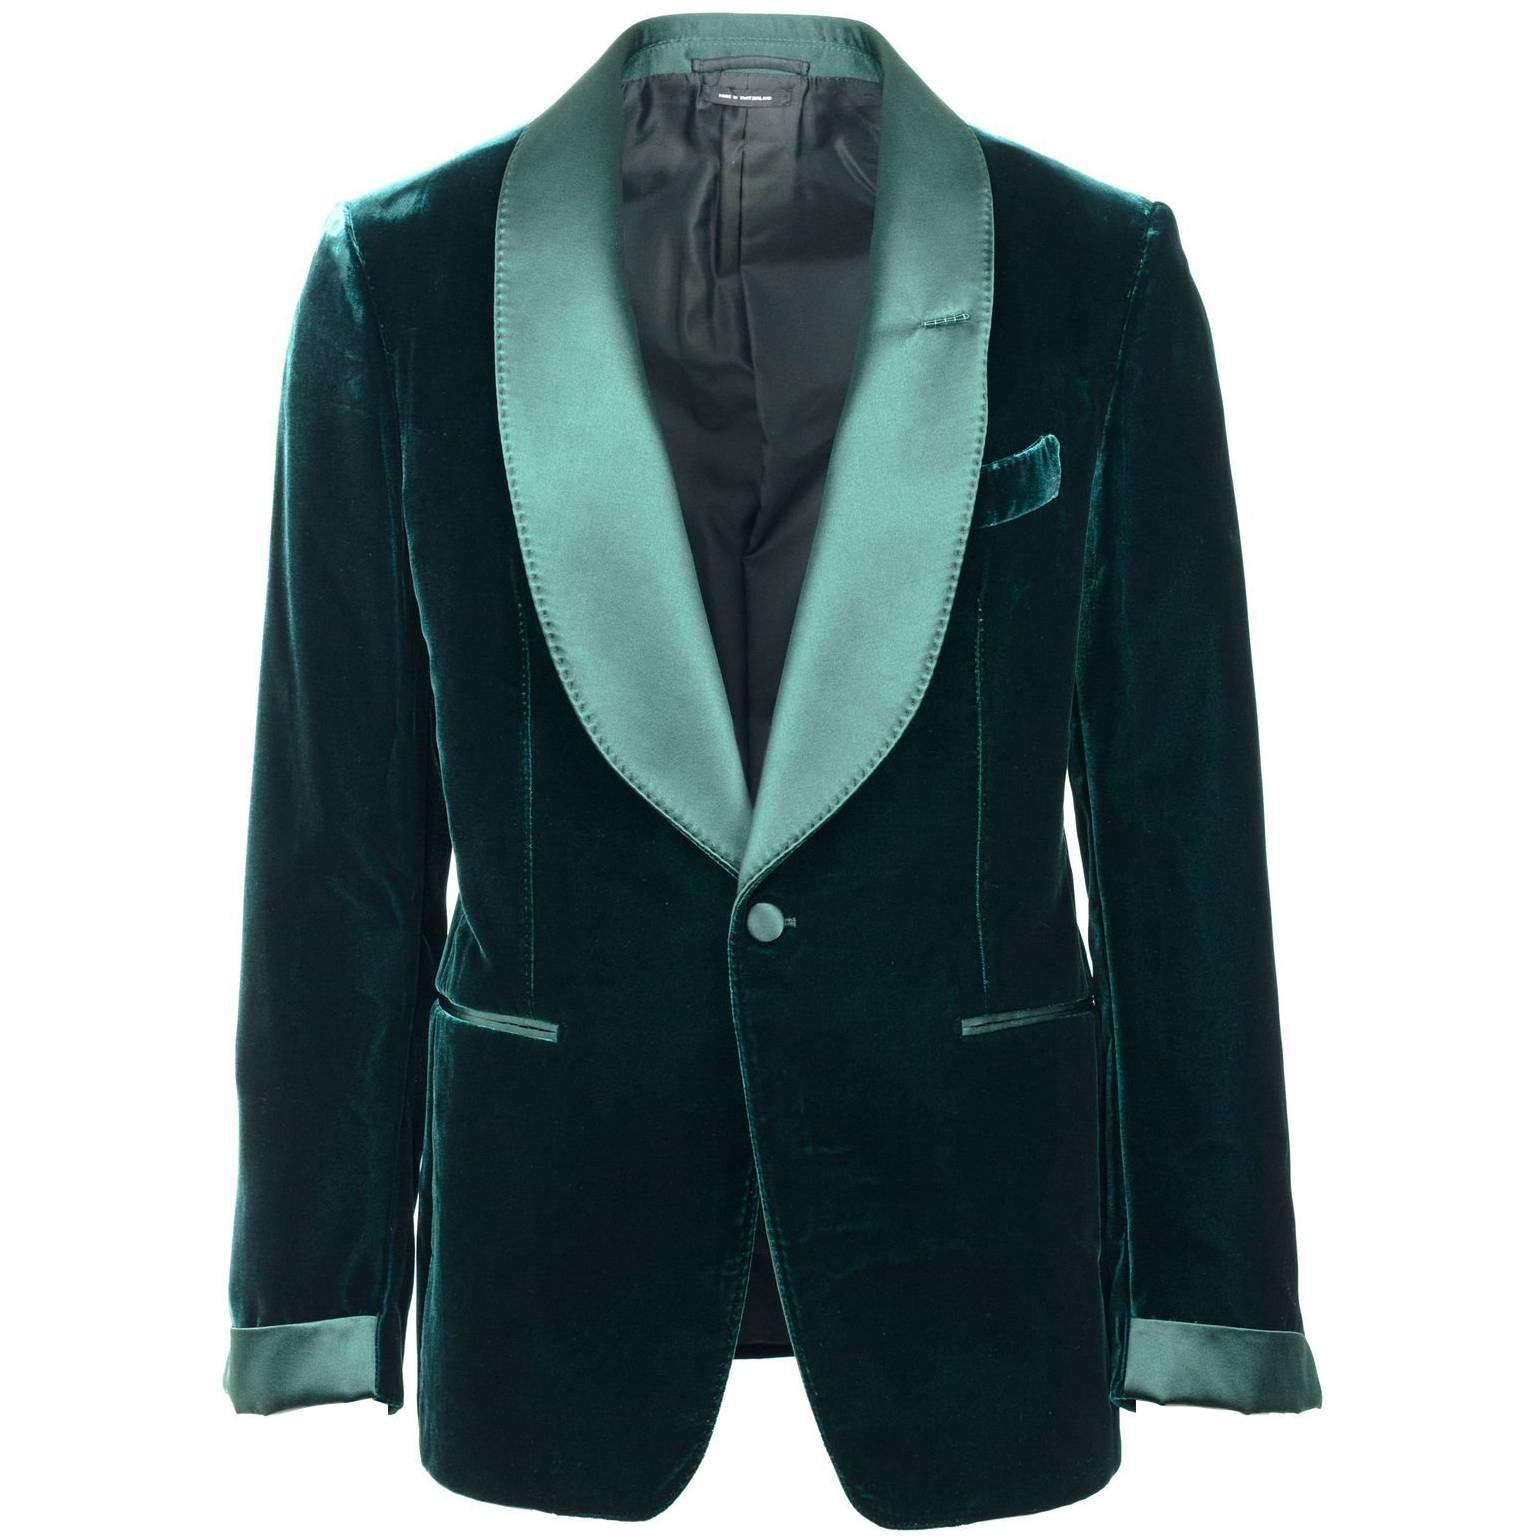 Tom Ford Mens Green Velvet Shelton Cocktail Blazer Jacket Size 48R 38R RTL$3980